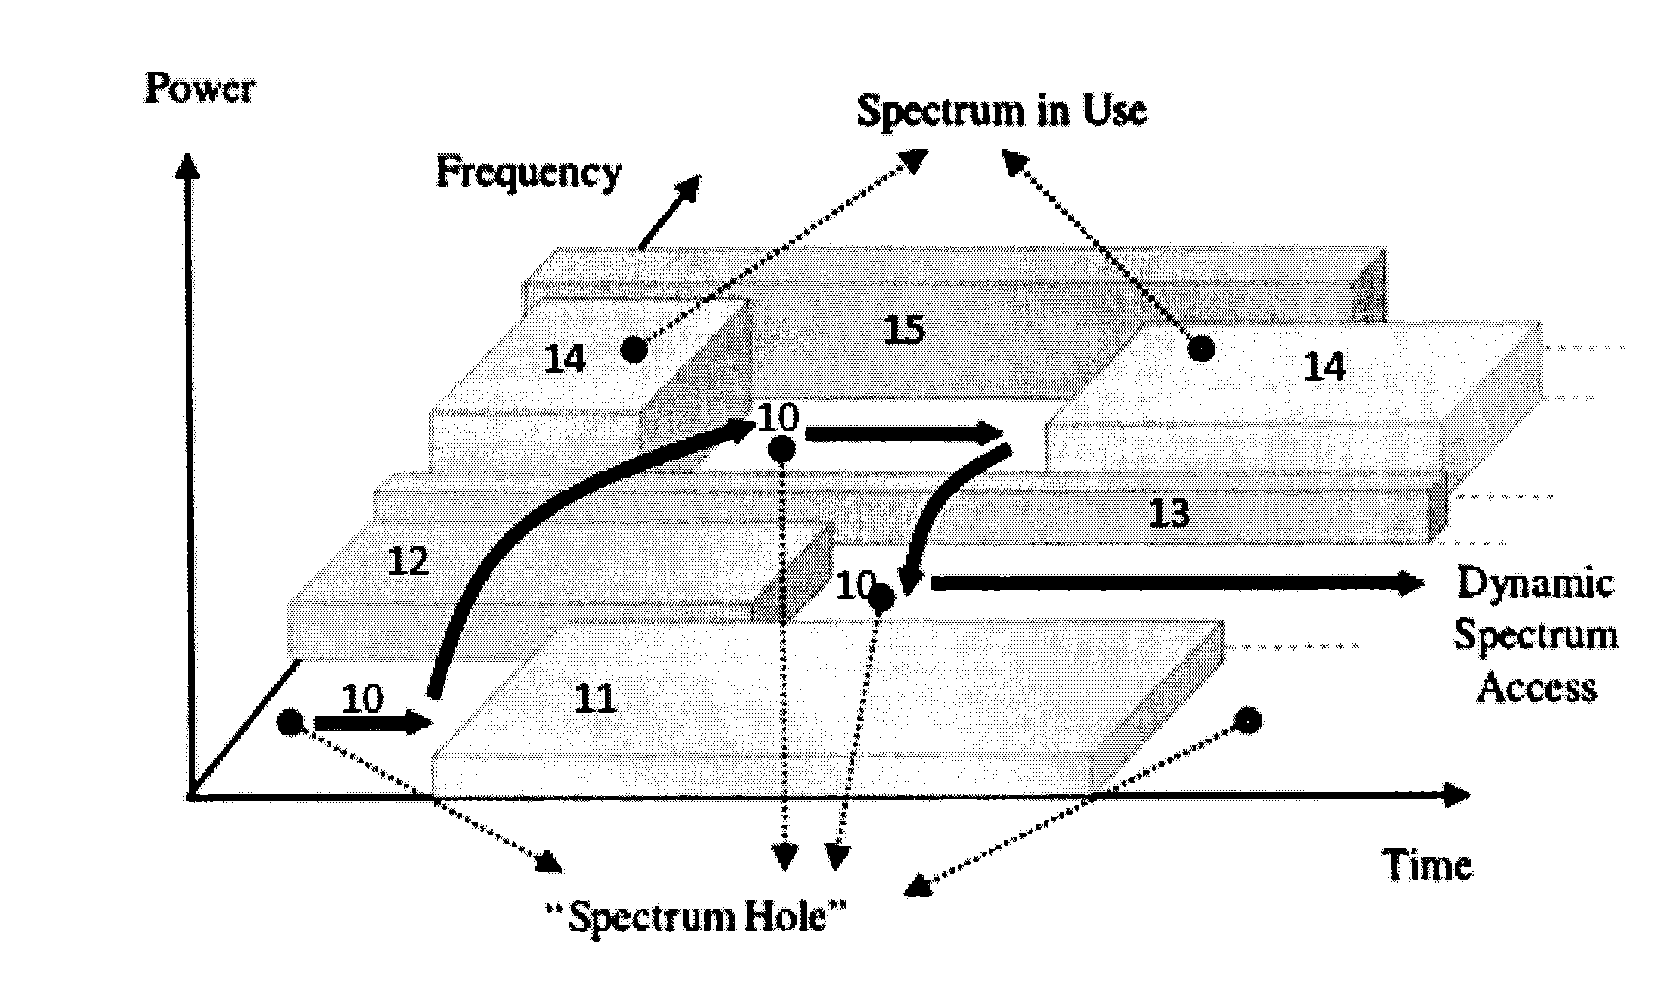 Cooperative cognitive radio spectrum sensing using a hybrid data-decision method